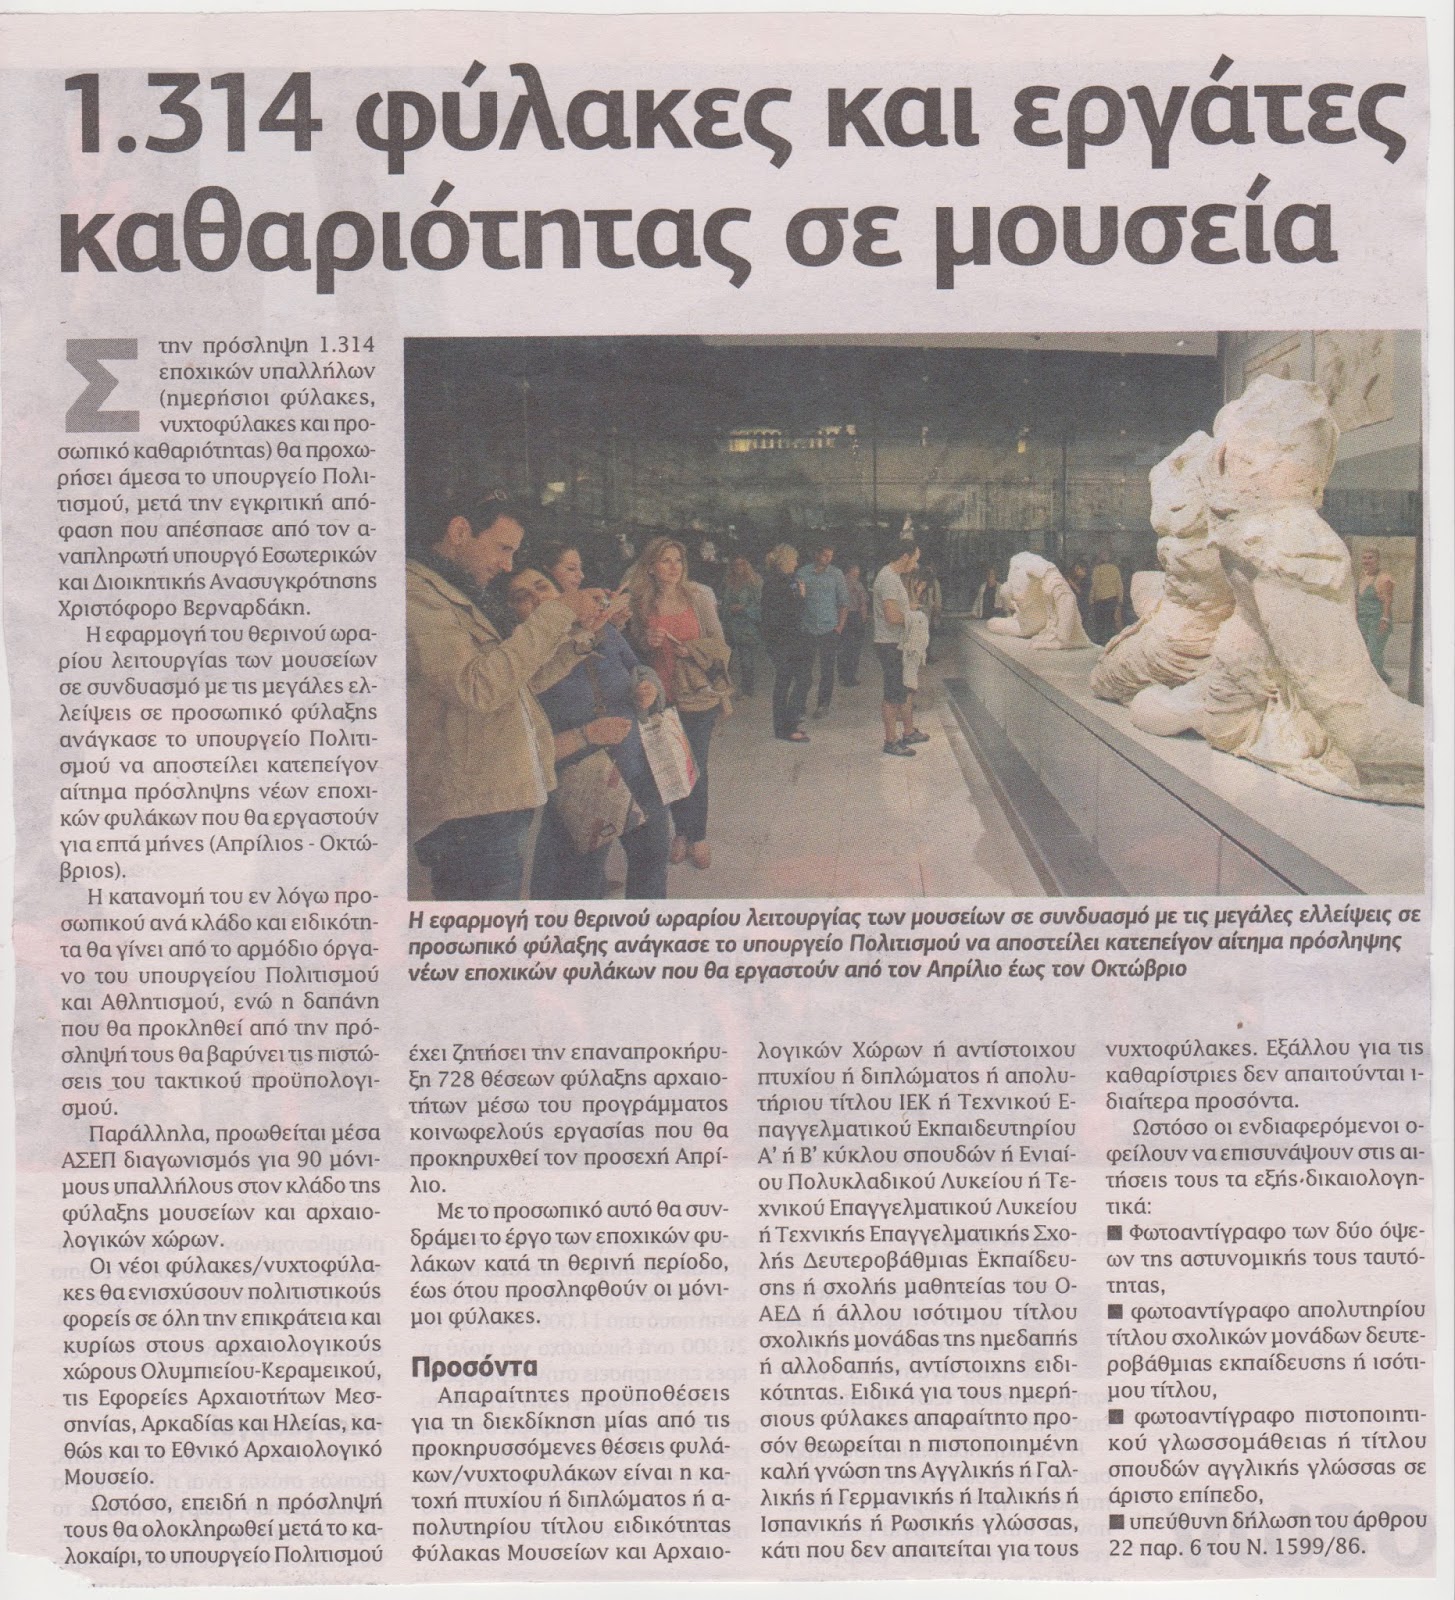 Προσλήψεις 1.314 υπαλλήλων σε μουσεία – Τα προσόντα που απαιτούνται (ΑΝΑΛΥΤΙΚΑ)